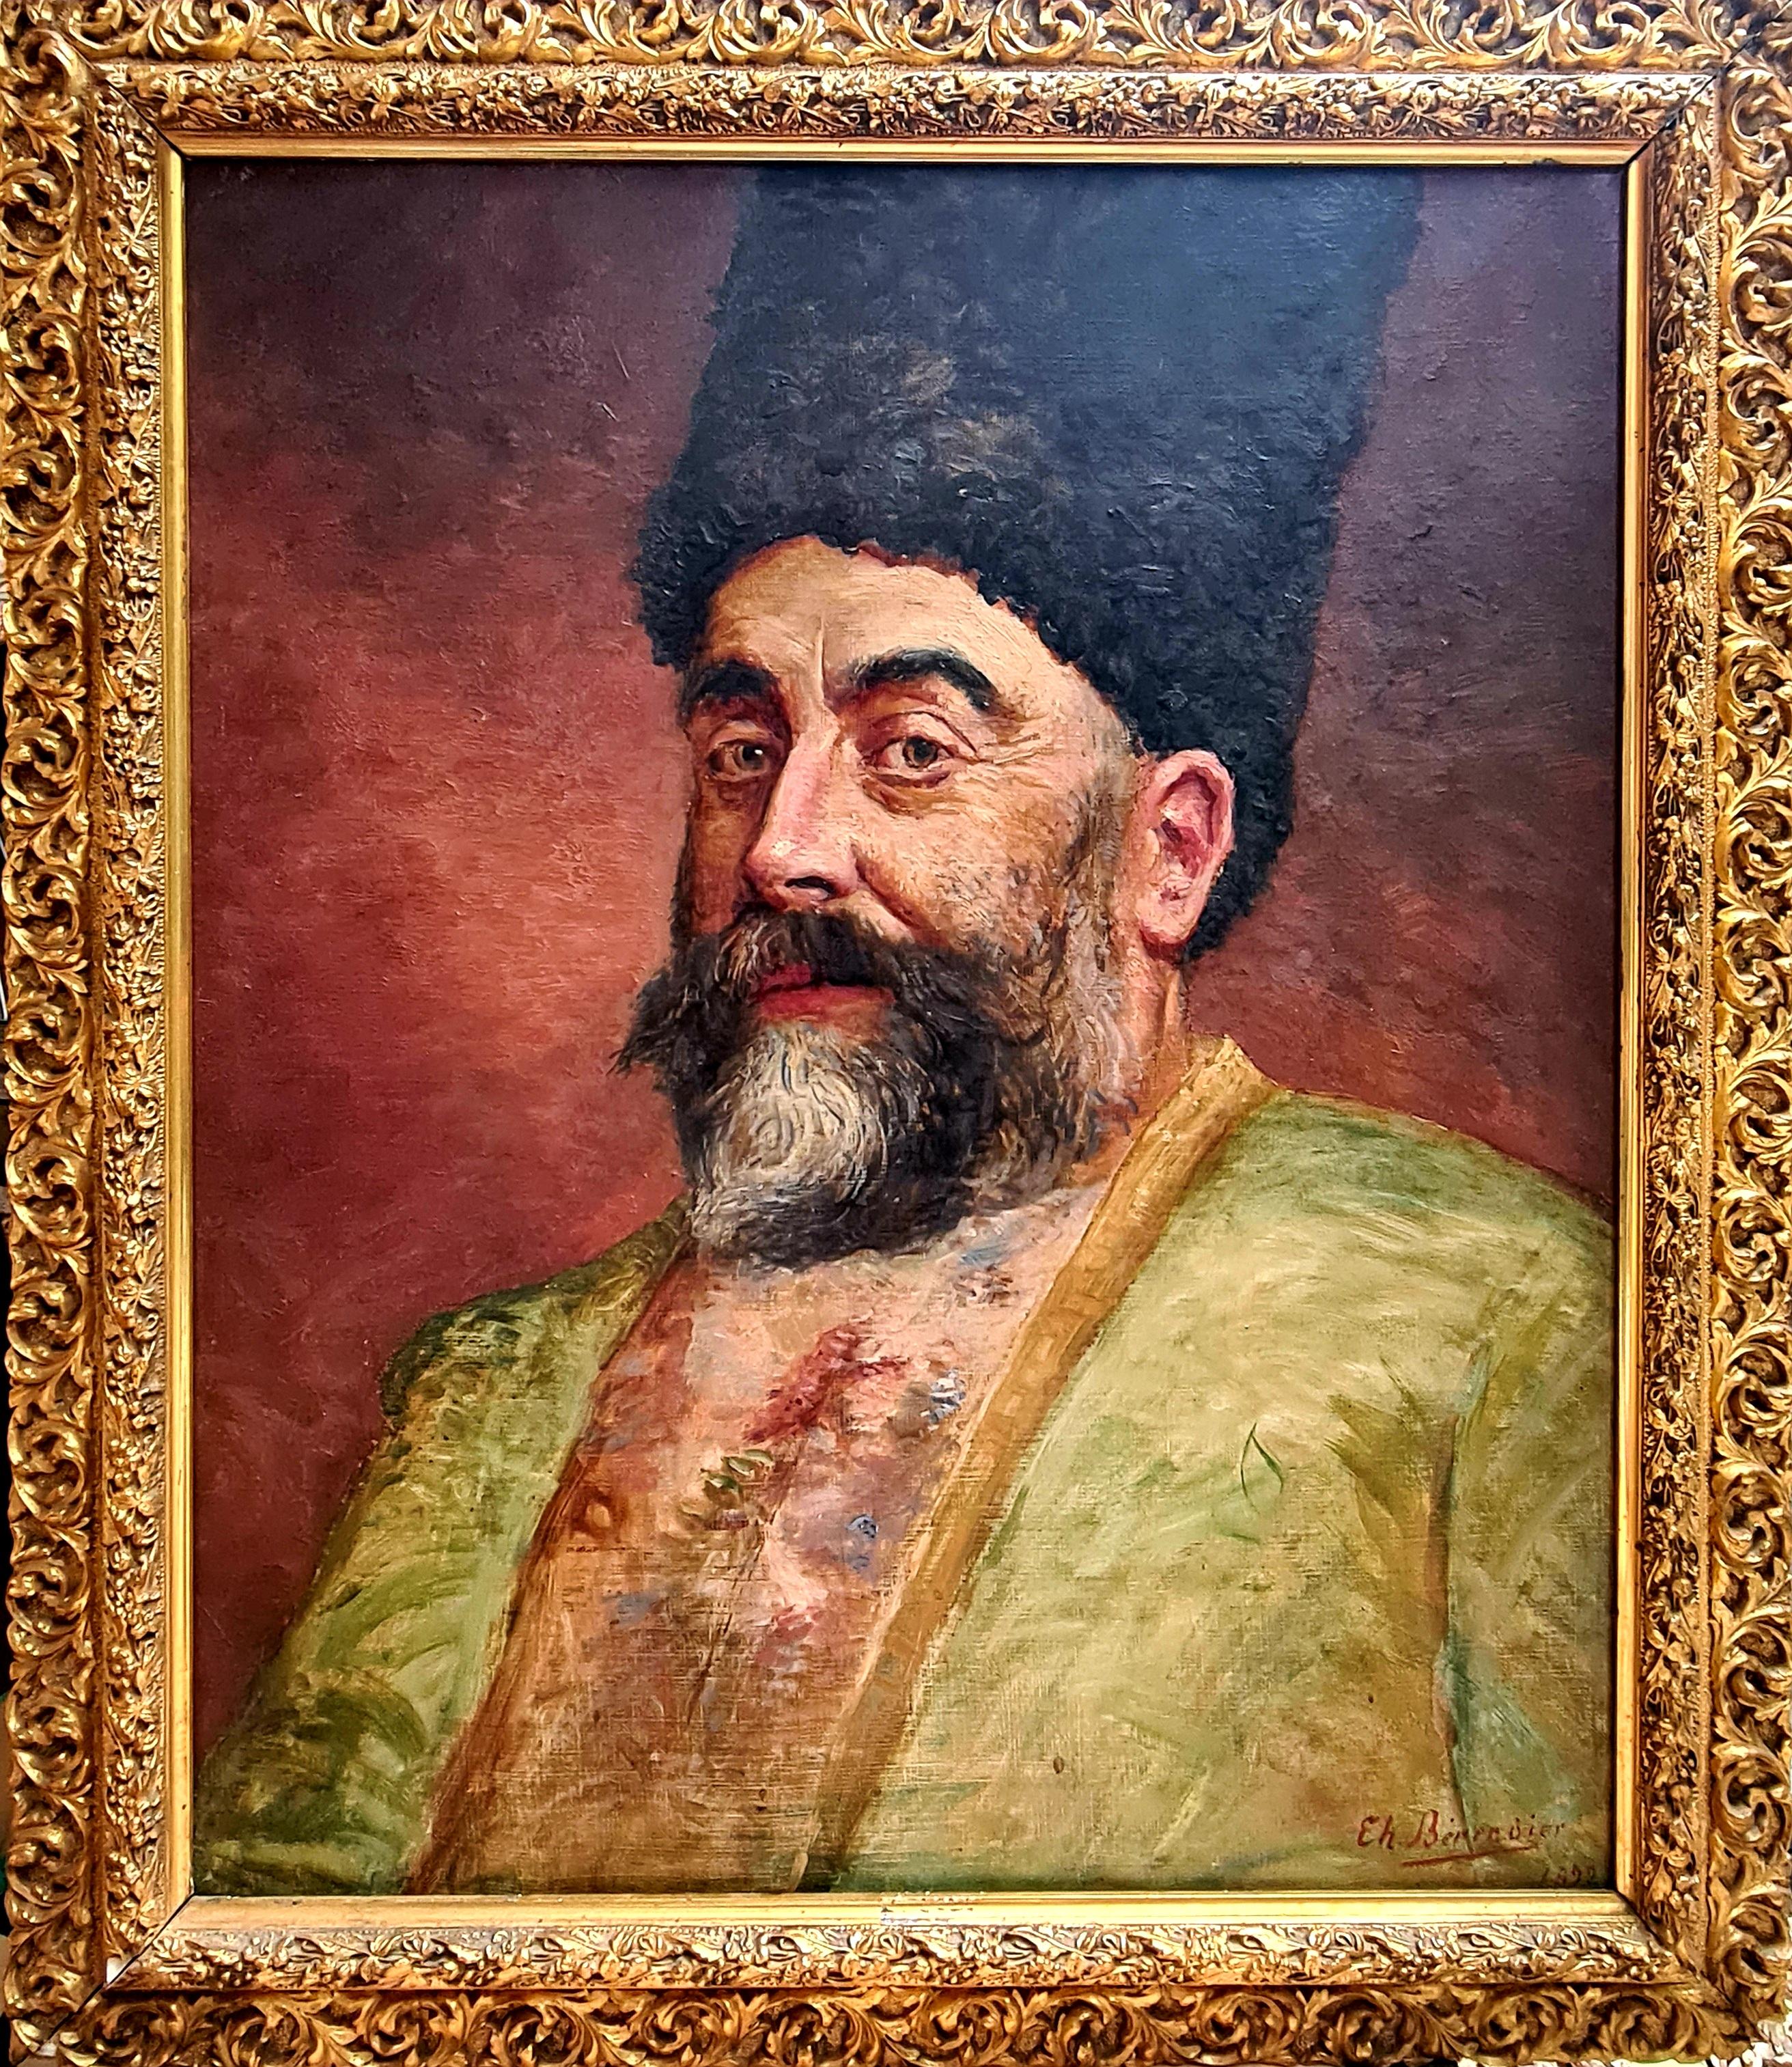 Papakha, un noble pré révolutionnaire des Caucases